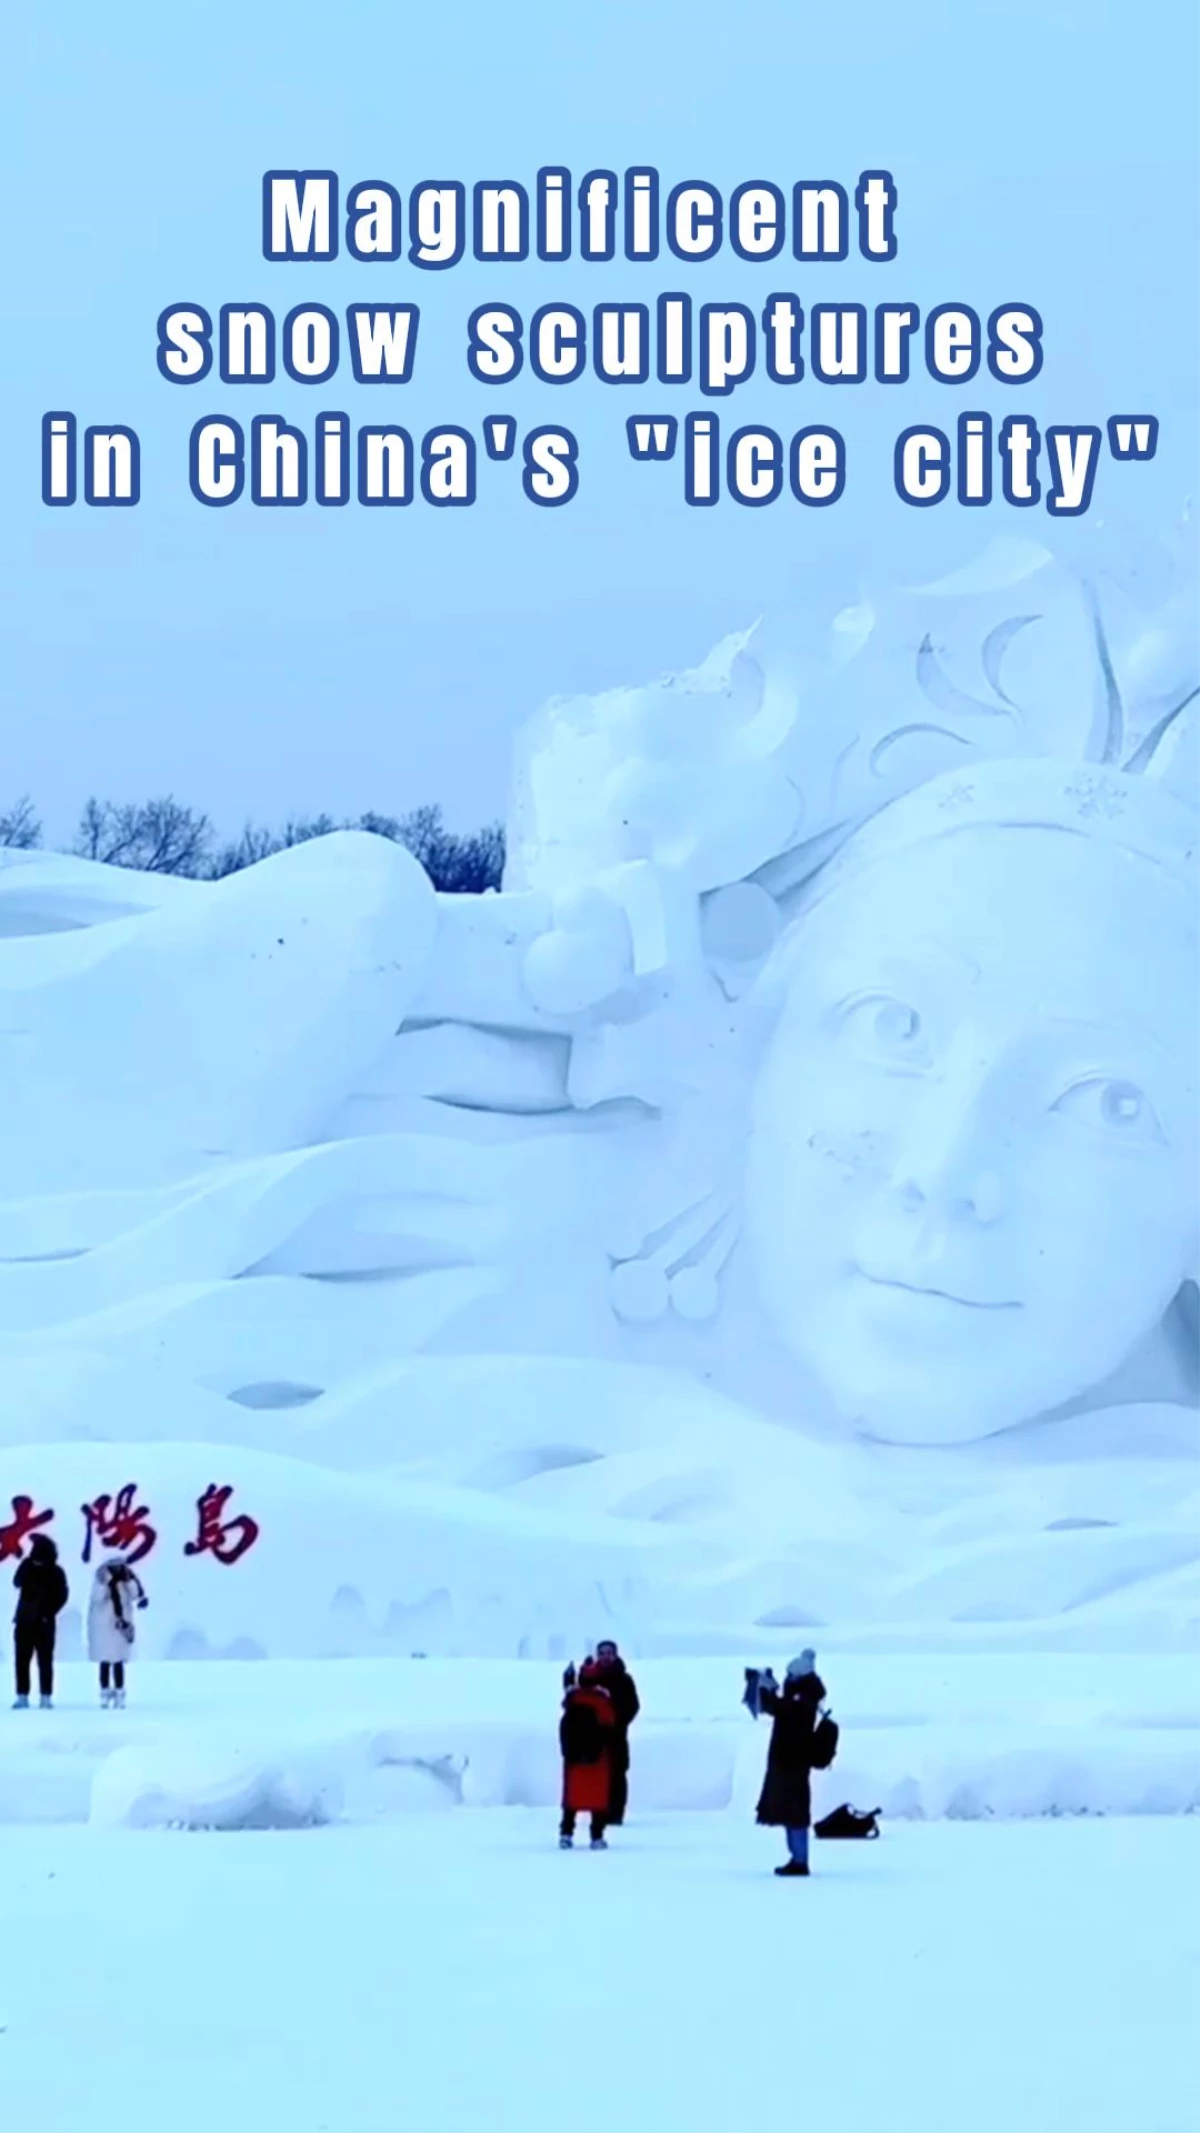 Çin\'in Harbin kentindeki Güneş Adası\'ndaki Kardan Heykelleri Görmeye Hazır Olun